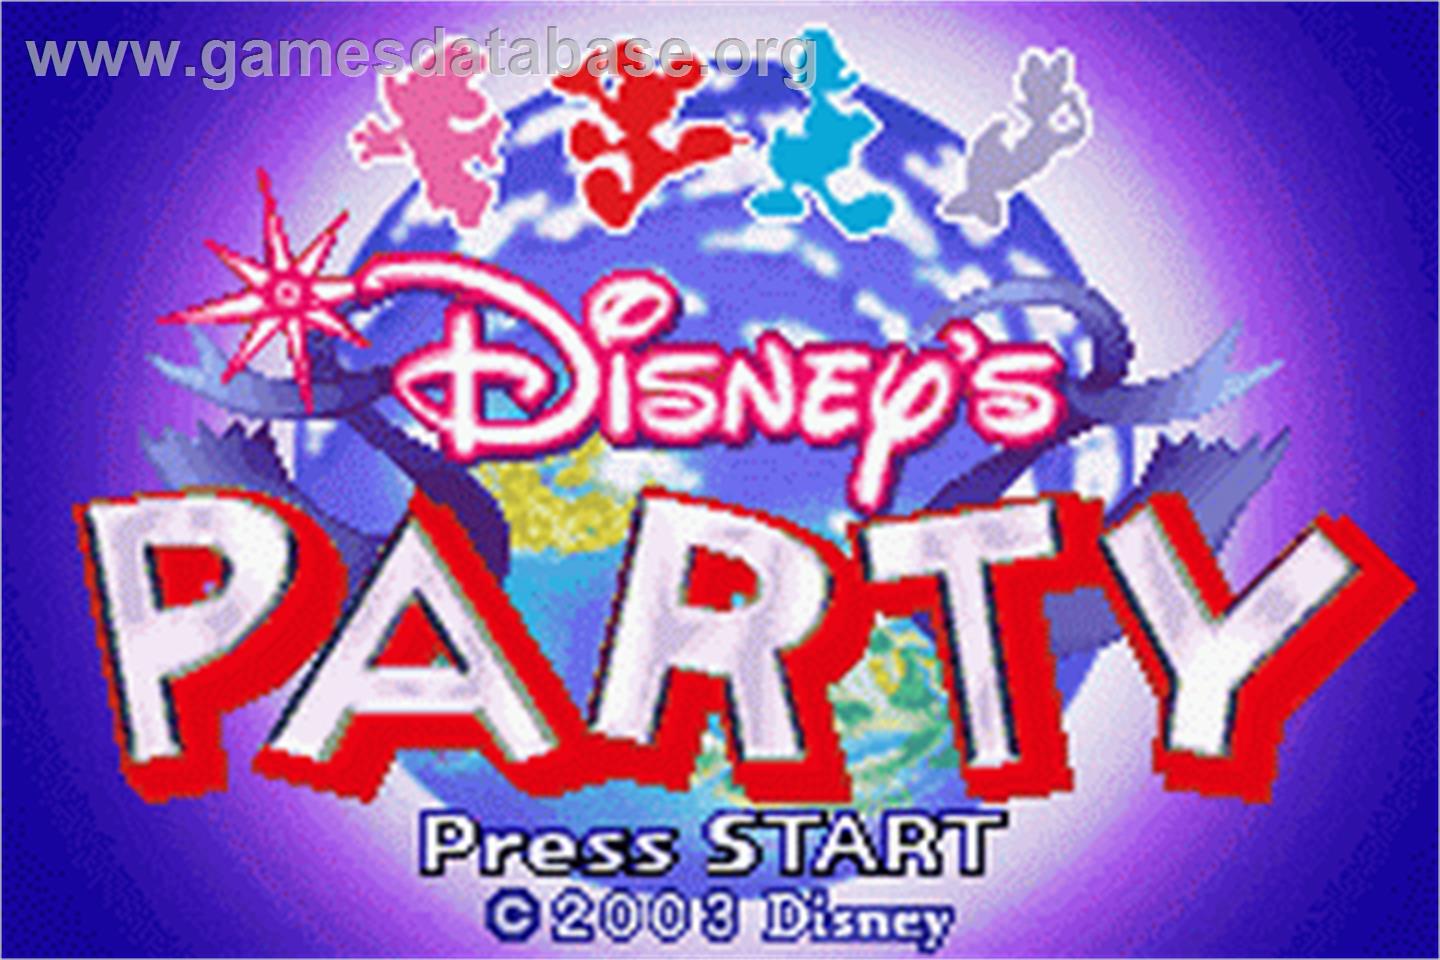 Party - Nintendo Game Boy Advance - Artwork - Title Screen